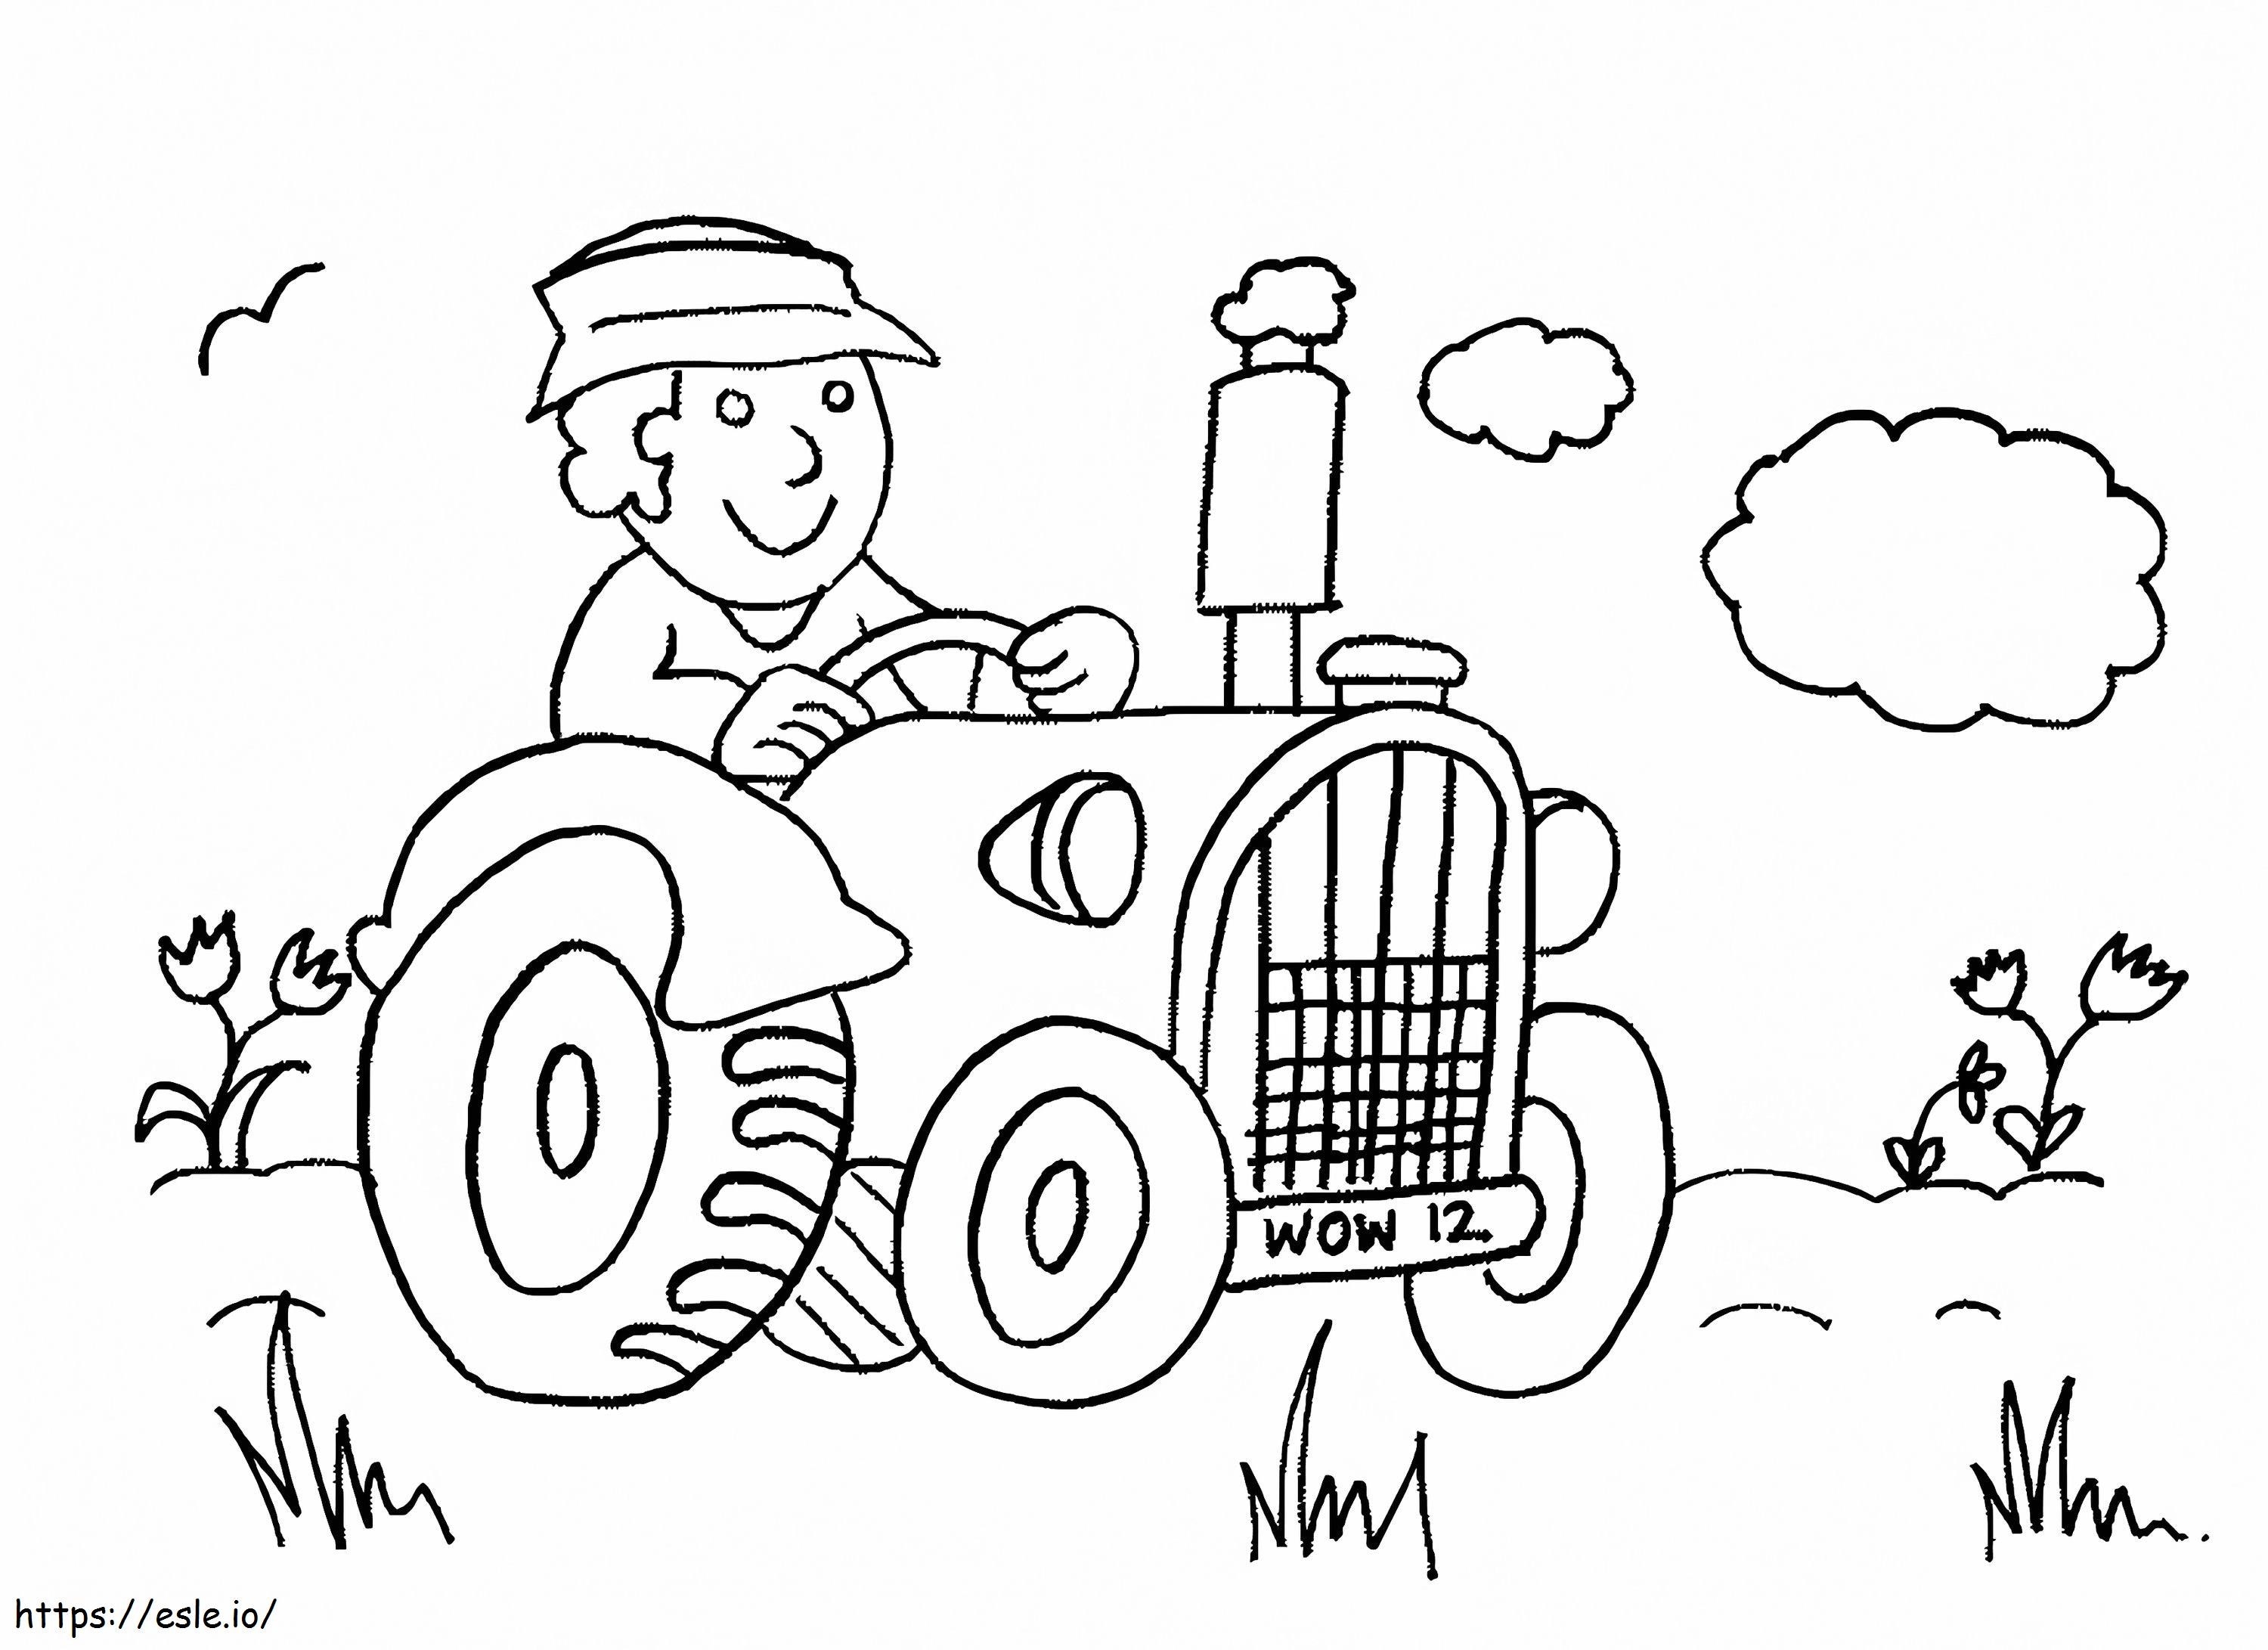 Desenhos para colorir de desenho de um fazendeiro no seu trator